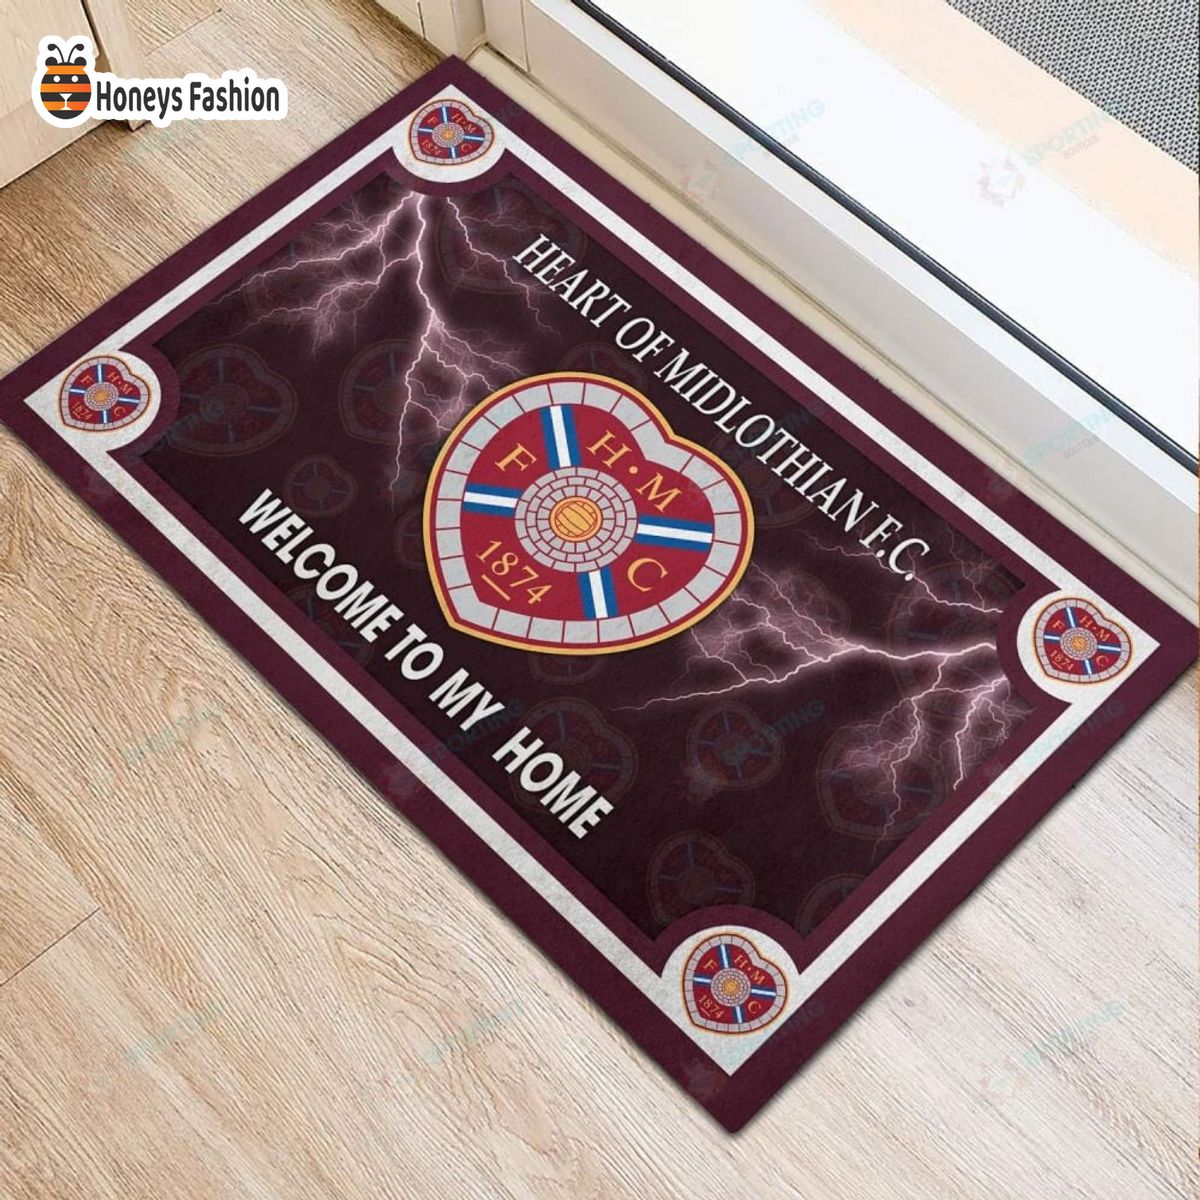 Heart of Midlothian F.C. welcome to my home doormat